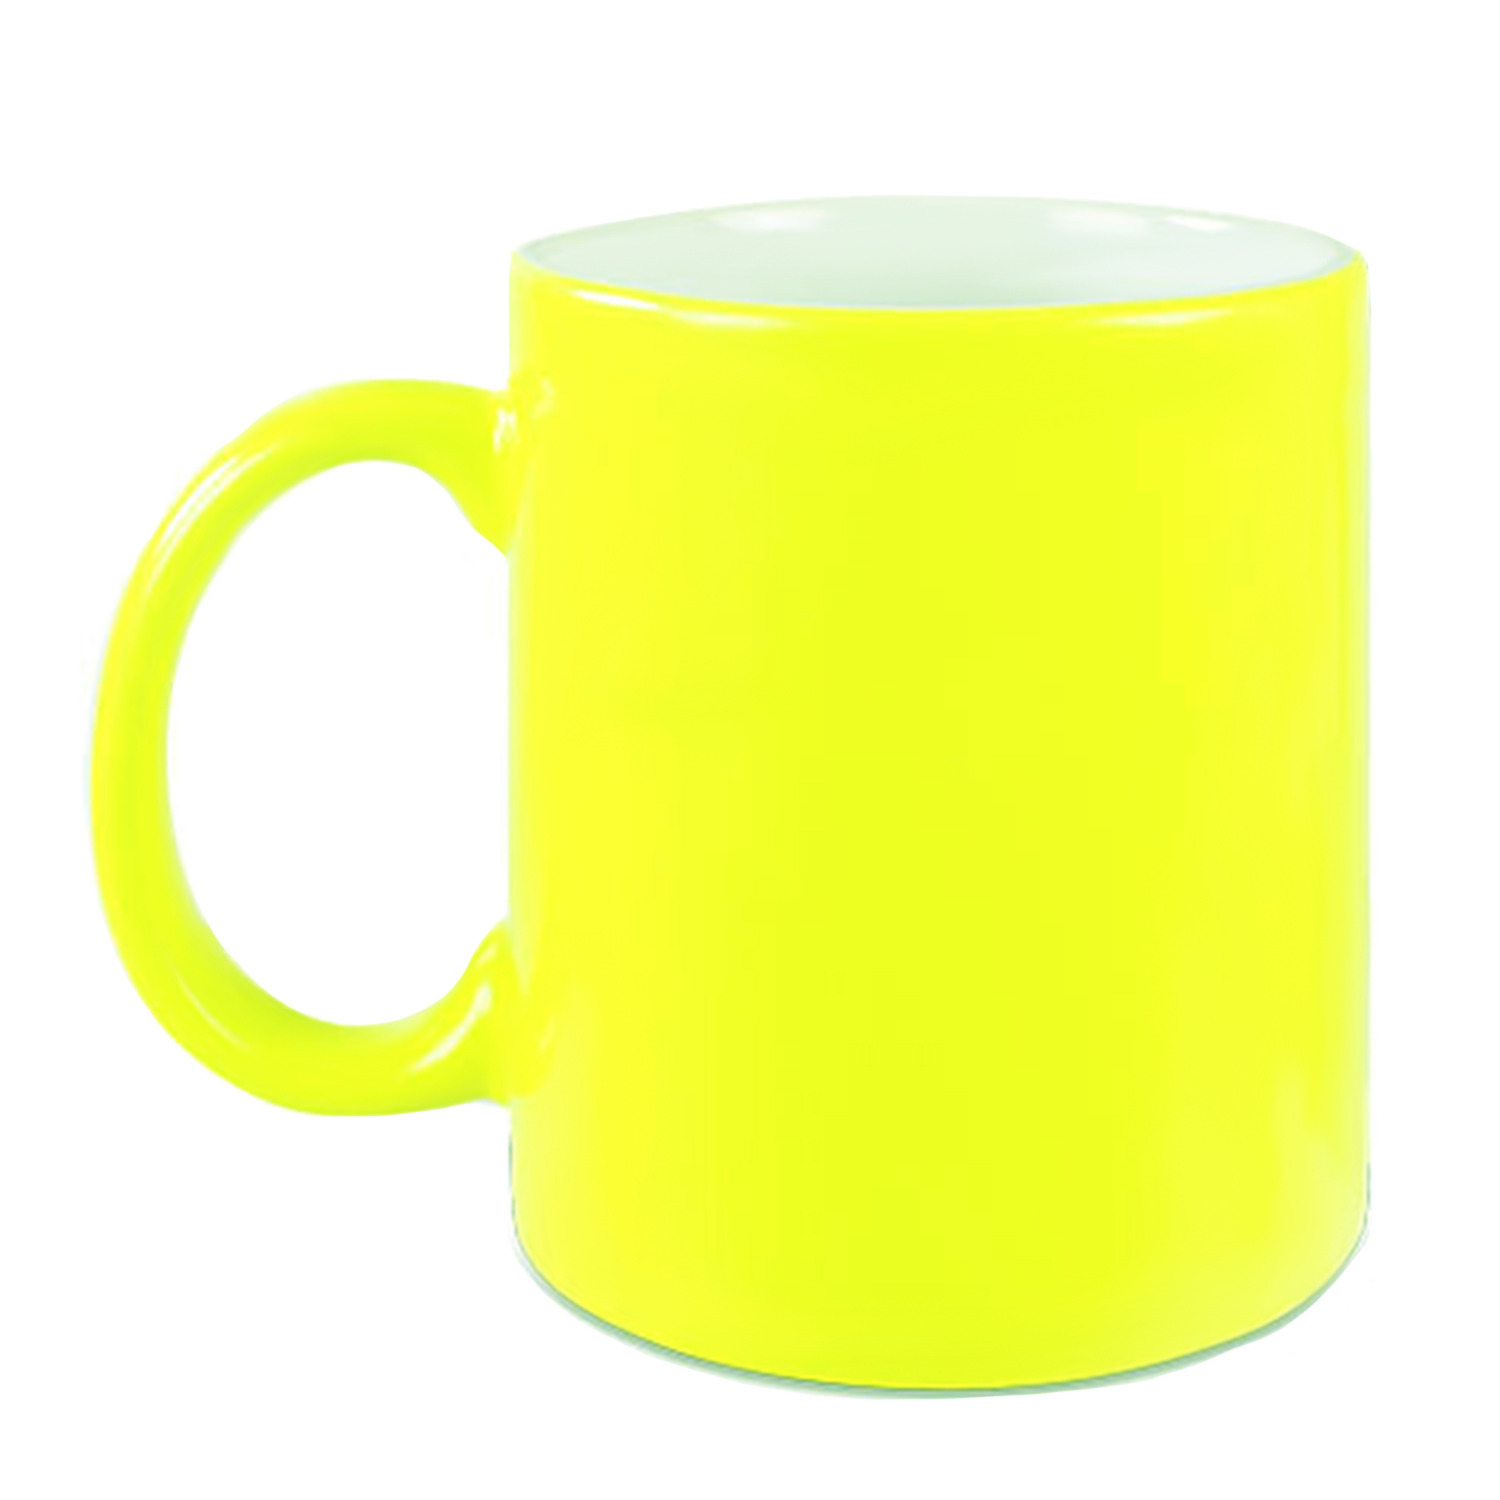 1x Fluor neon gele mokken onbedrukt 330 ml